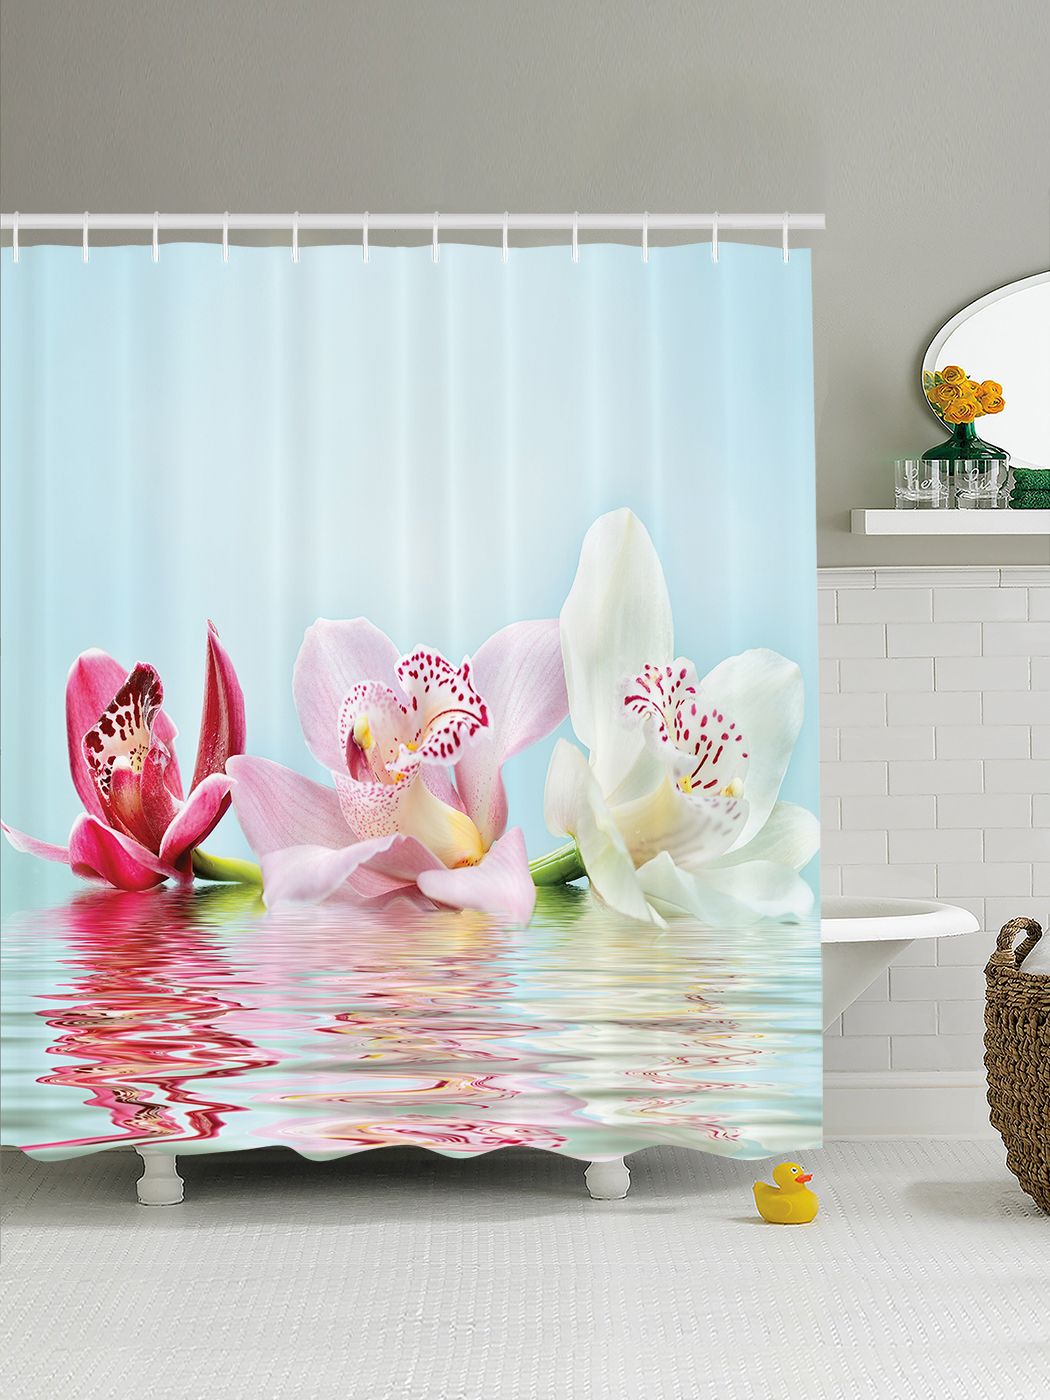 Шторки для ванной 180. Штора для ванной Валиант 3д. JOYARTY шторы для ванной. Шторки в ванную комнату с орхидеями. Шторка для ванной "Орхидея".